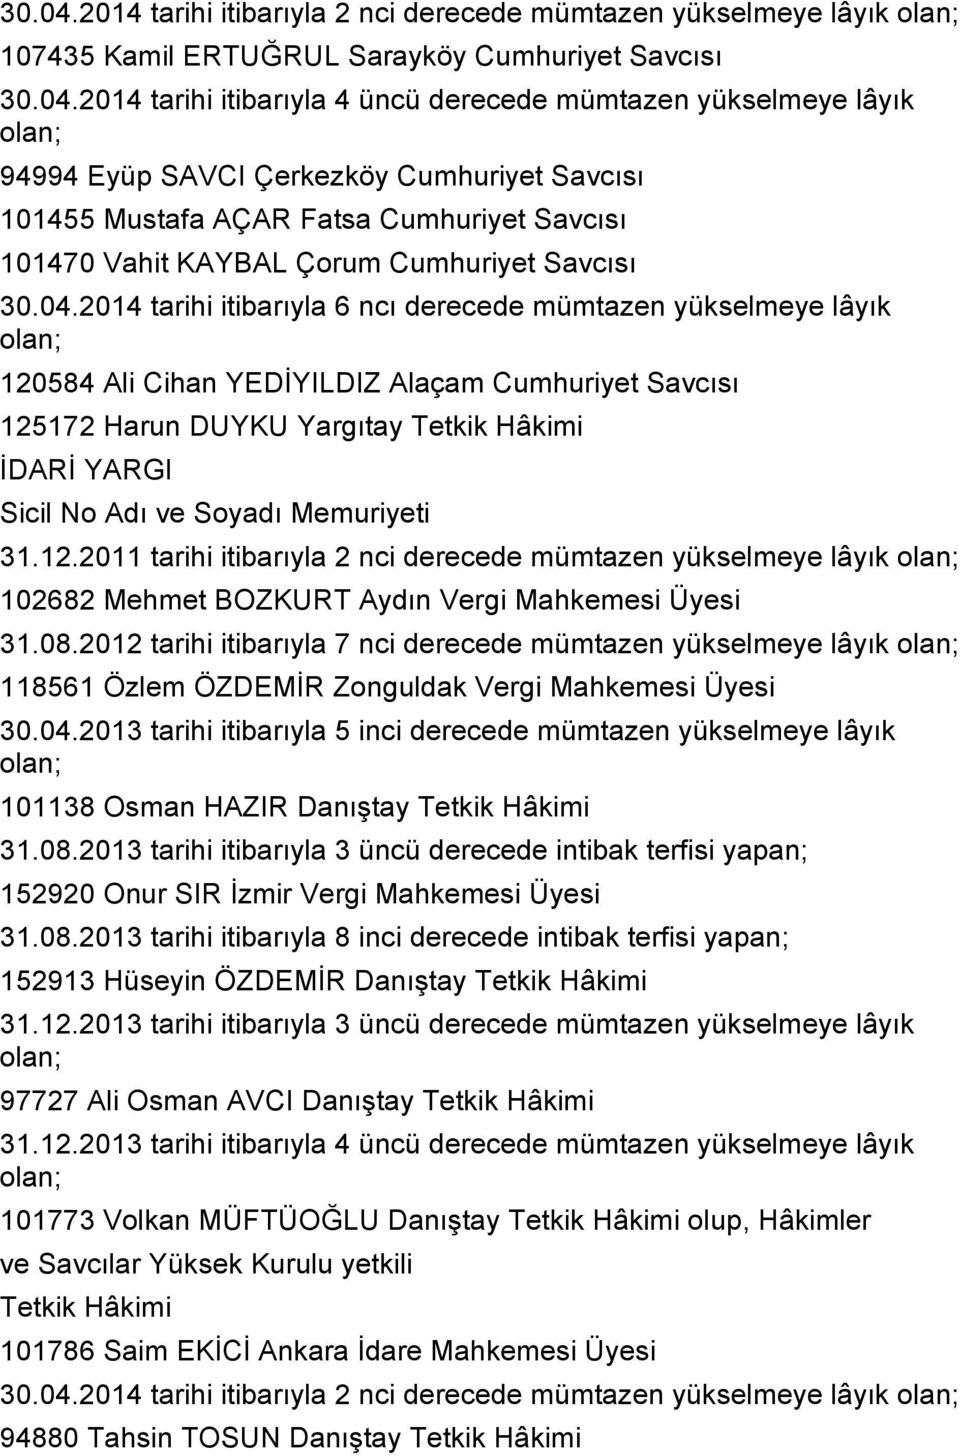 Eyüp SAVCI Çerkezköy Cumhuriyet Savcısı 101455 Mustafa AÇAR Fatsa Cumhuriyet Savcısı 101470 Vahit KAYBAL Çorum Cumhuriyet Savcısı 2014 tarihi itibarıyla 6 ncı derecede mümtazen yükselmeye lâyık olan;